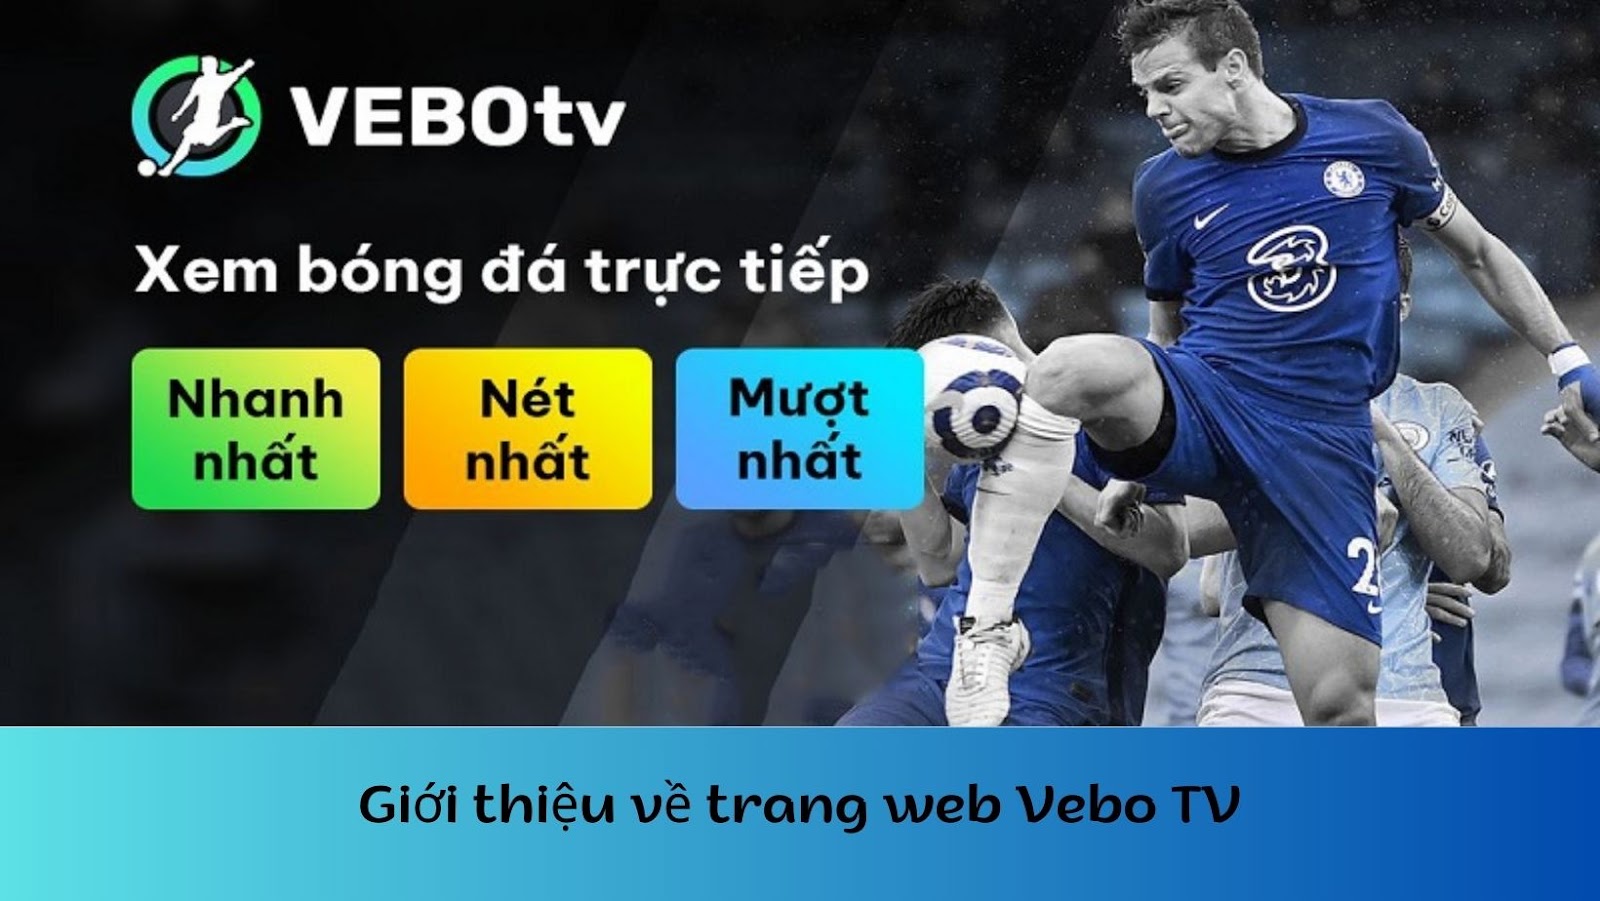 Trang web Vebo TV - Xem trực tiếp bóng đá hoàn toàn miễn phí